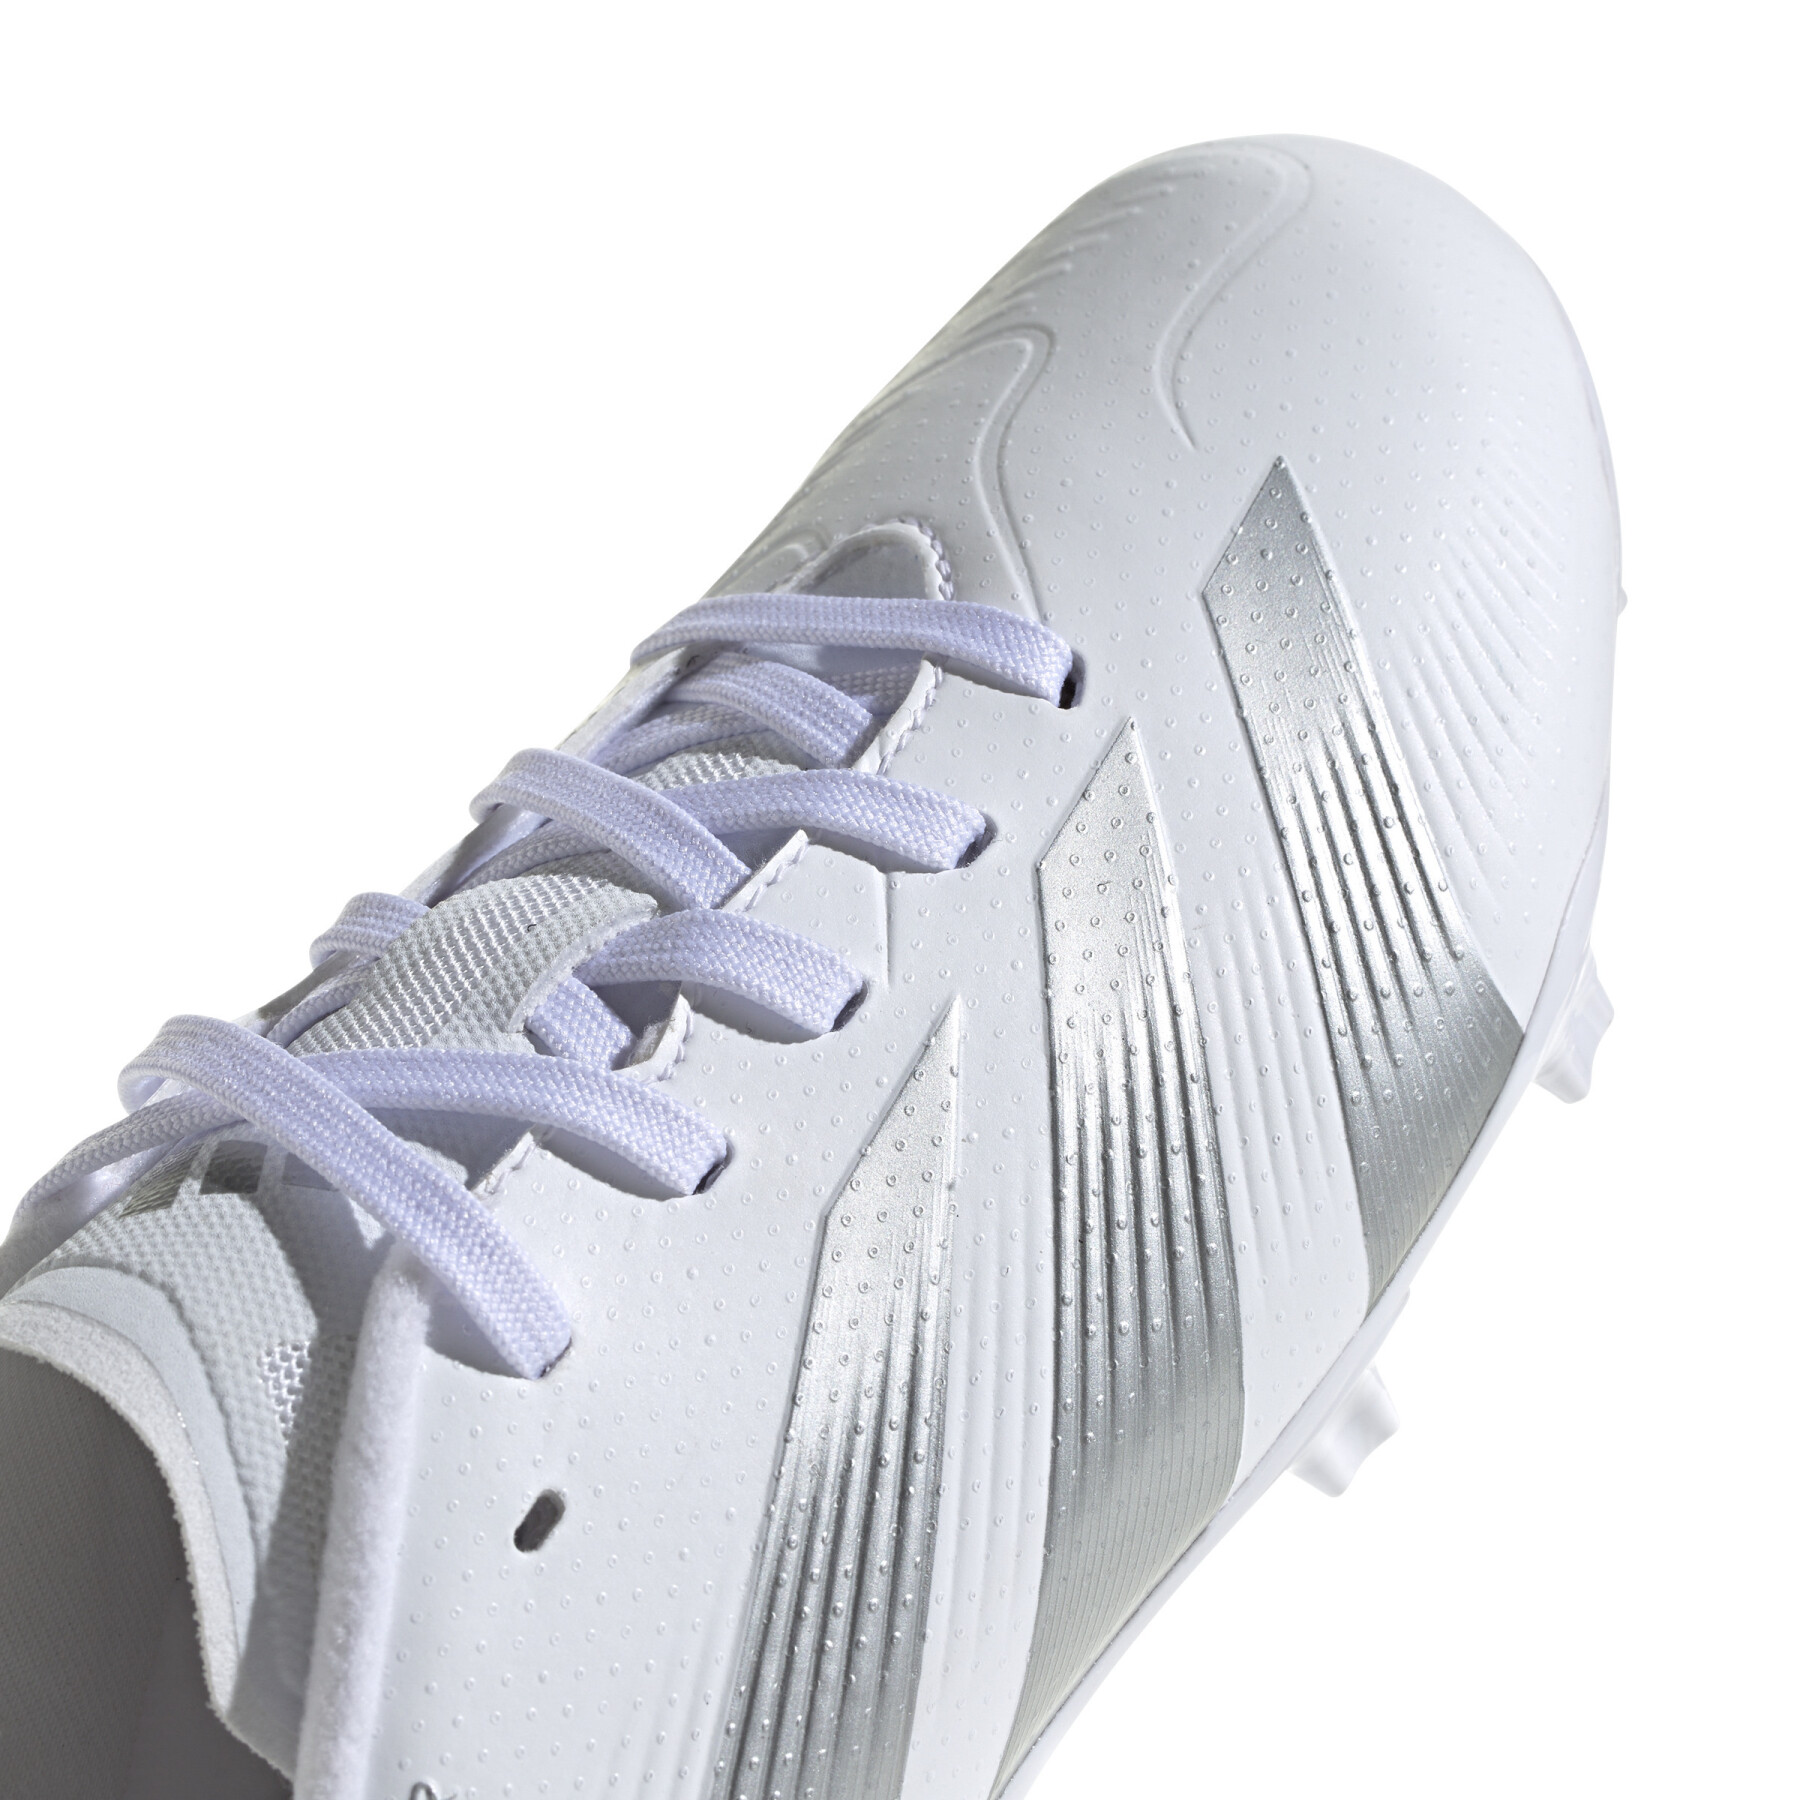 Soccer shoes adidas Predator League FM